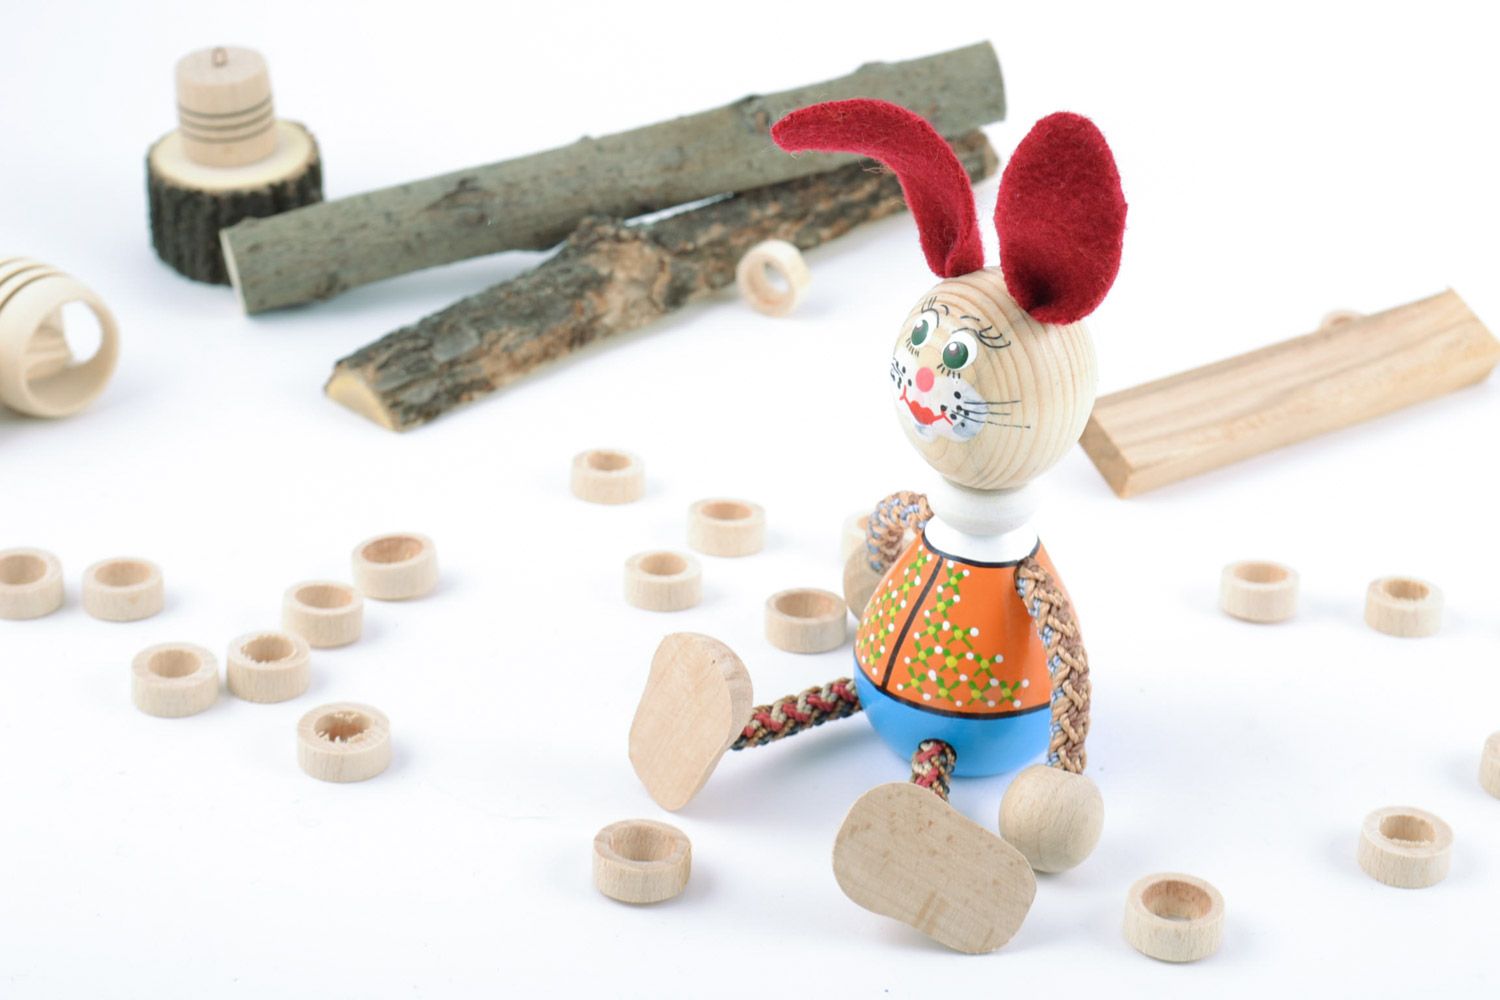 Деревянная игрушка в виде зайчика ручной работы расписанная эко красками фото 1